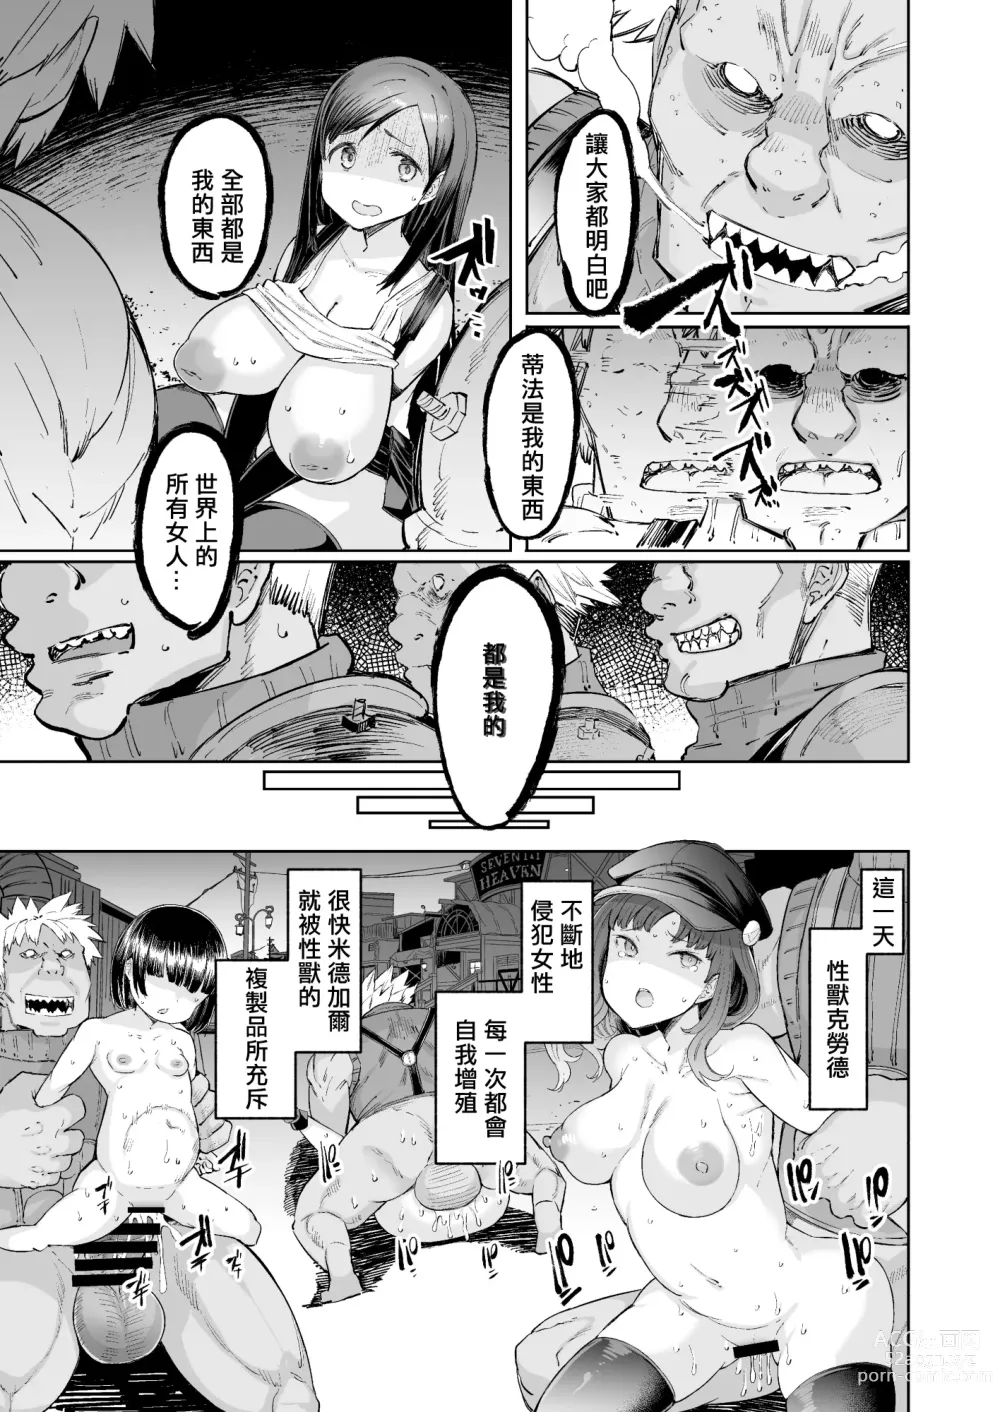 Page 41 of doujinshi Seijuu class 1st